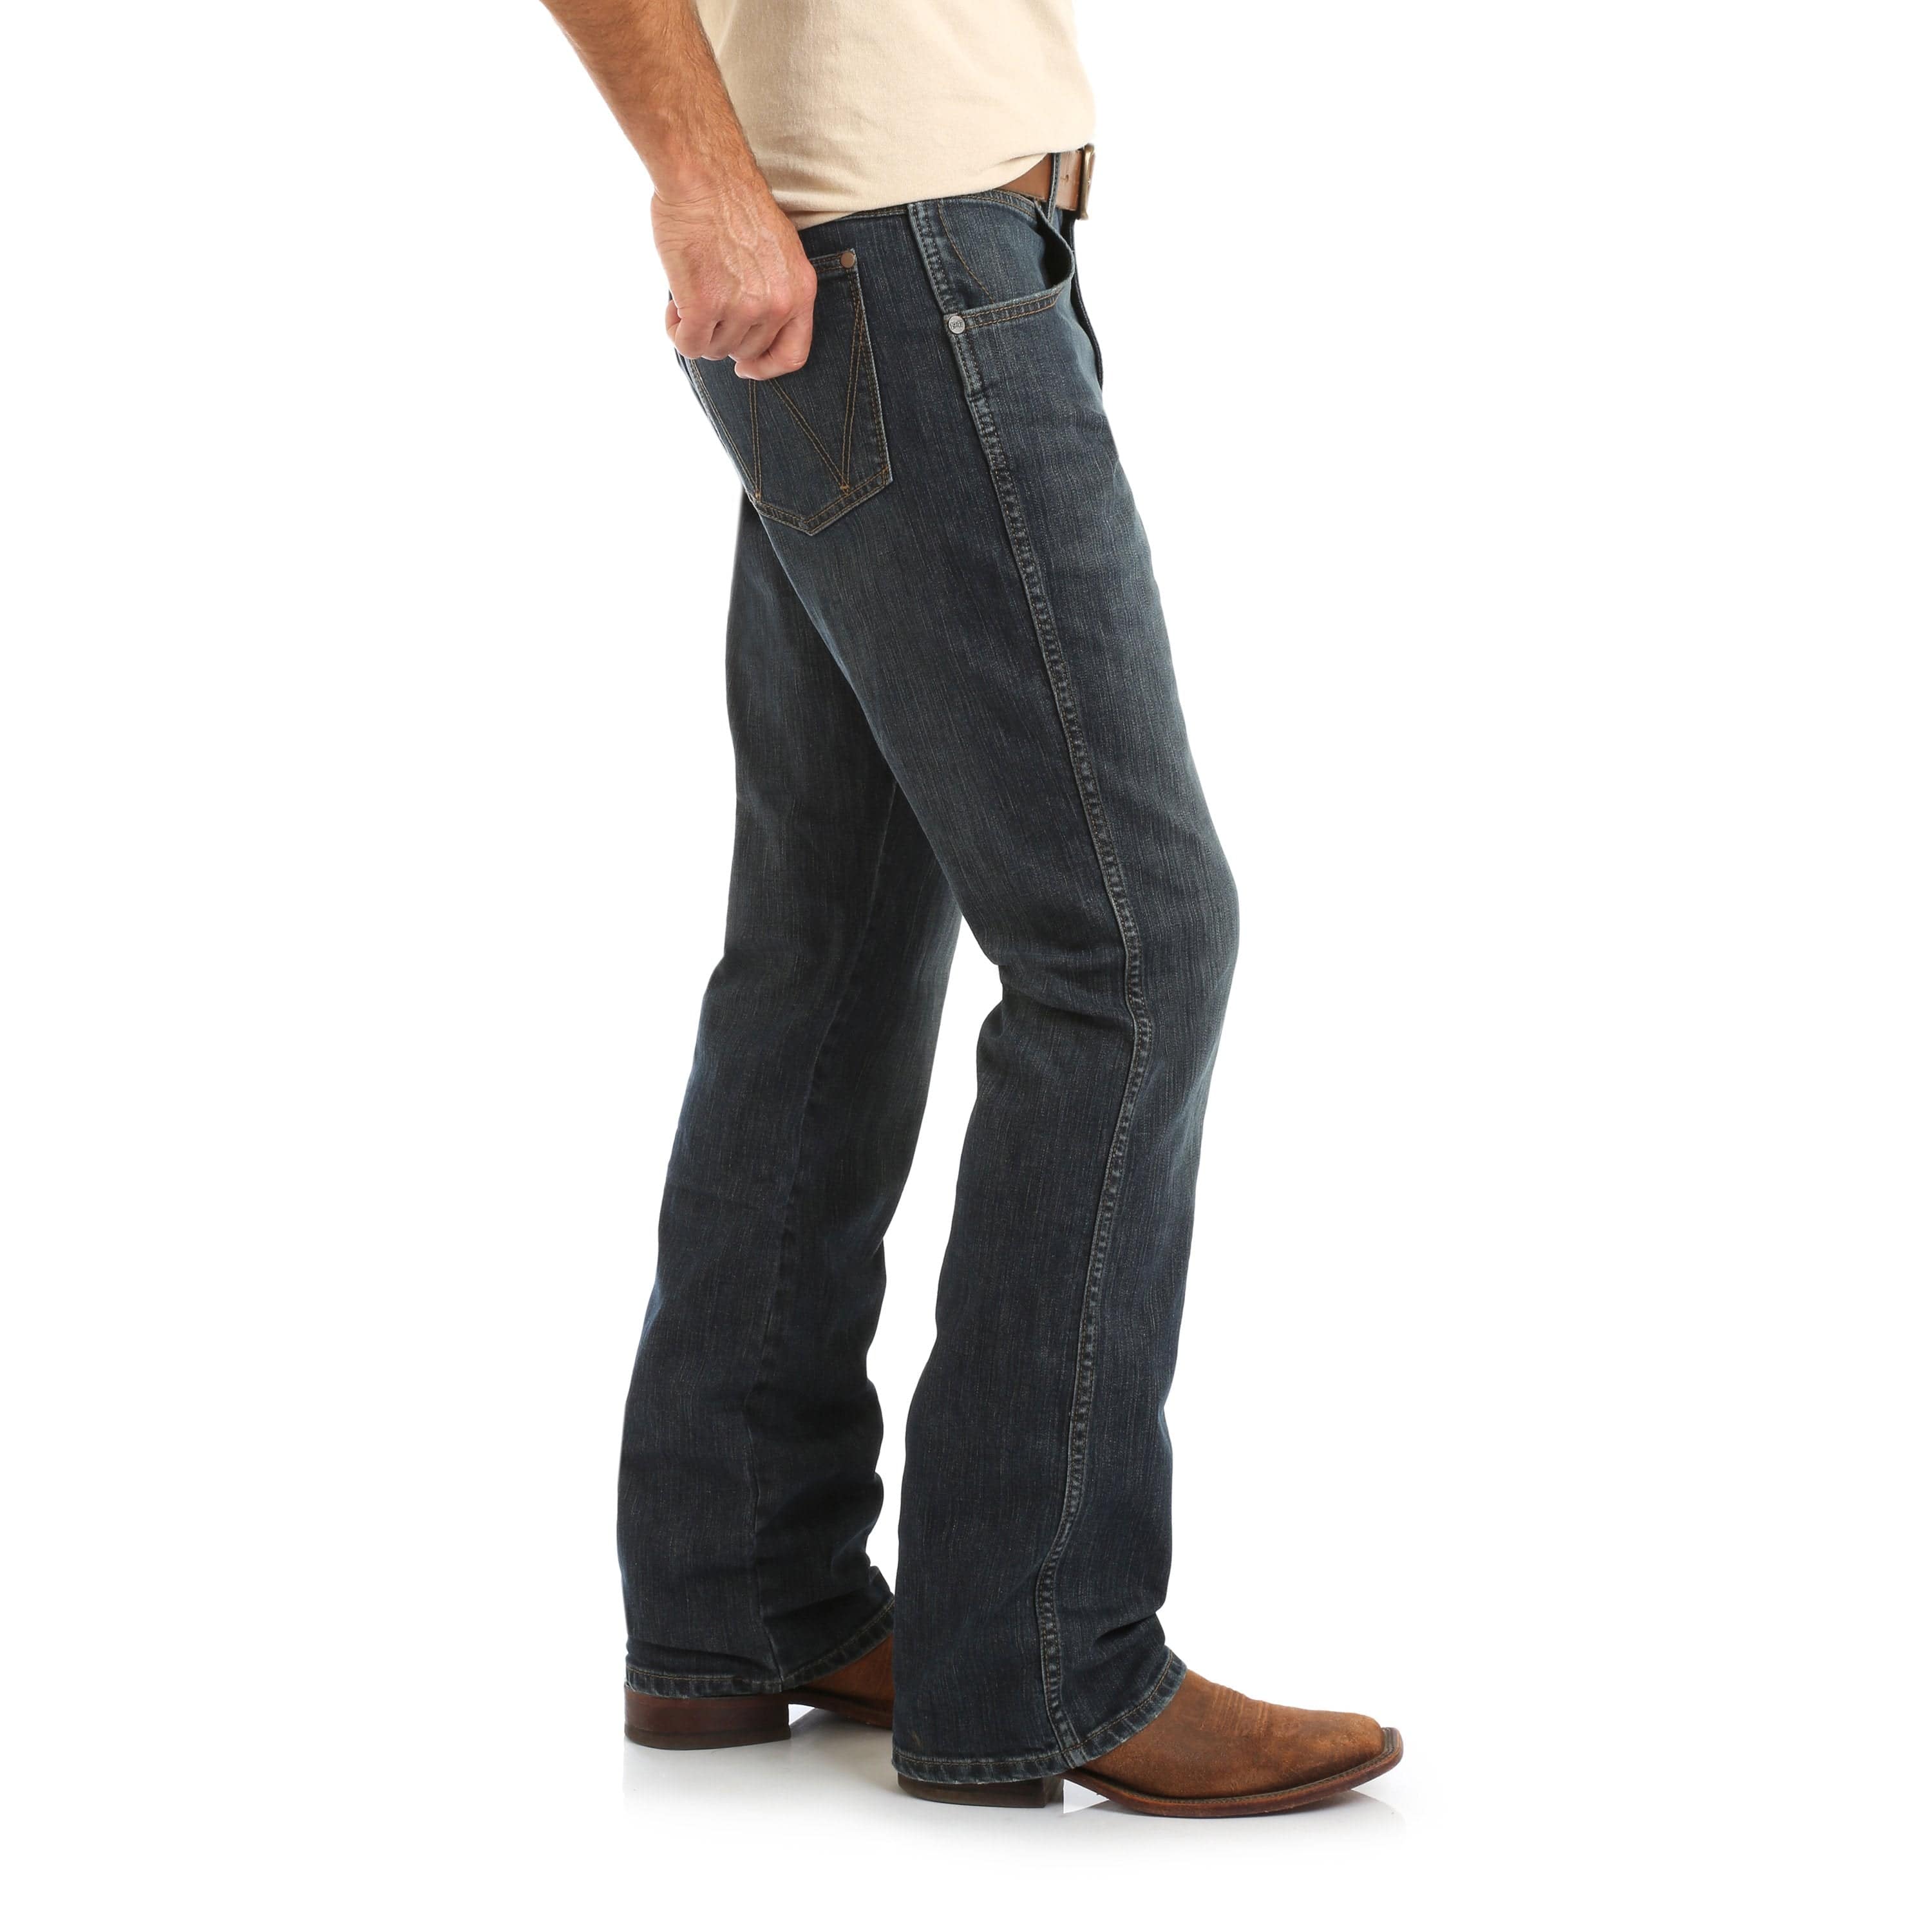 Men's Wrangler Bootcut jeans from £30